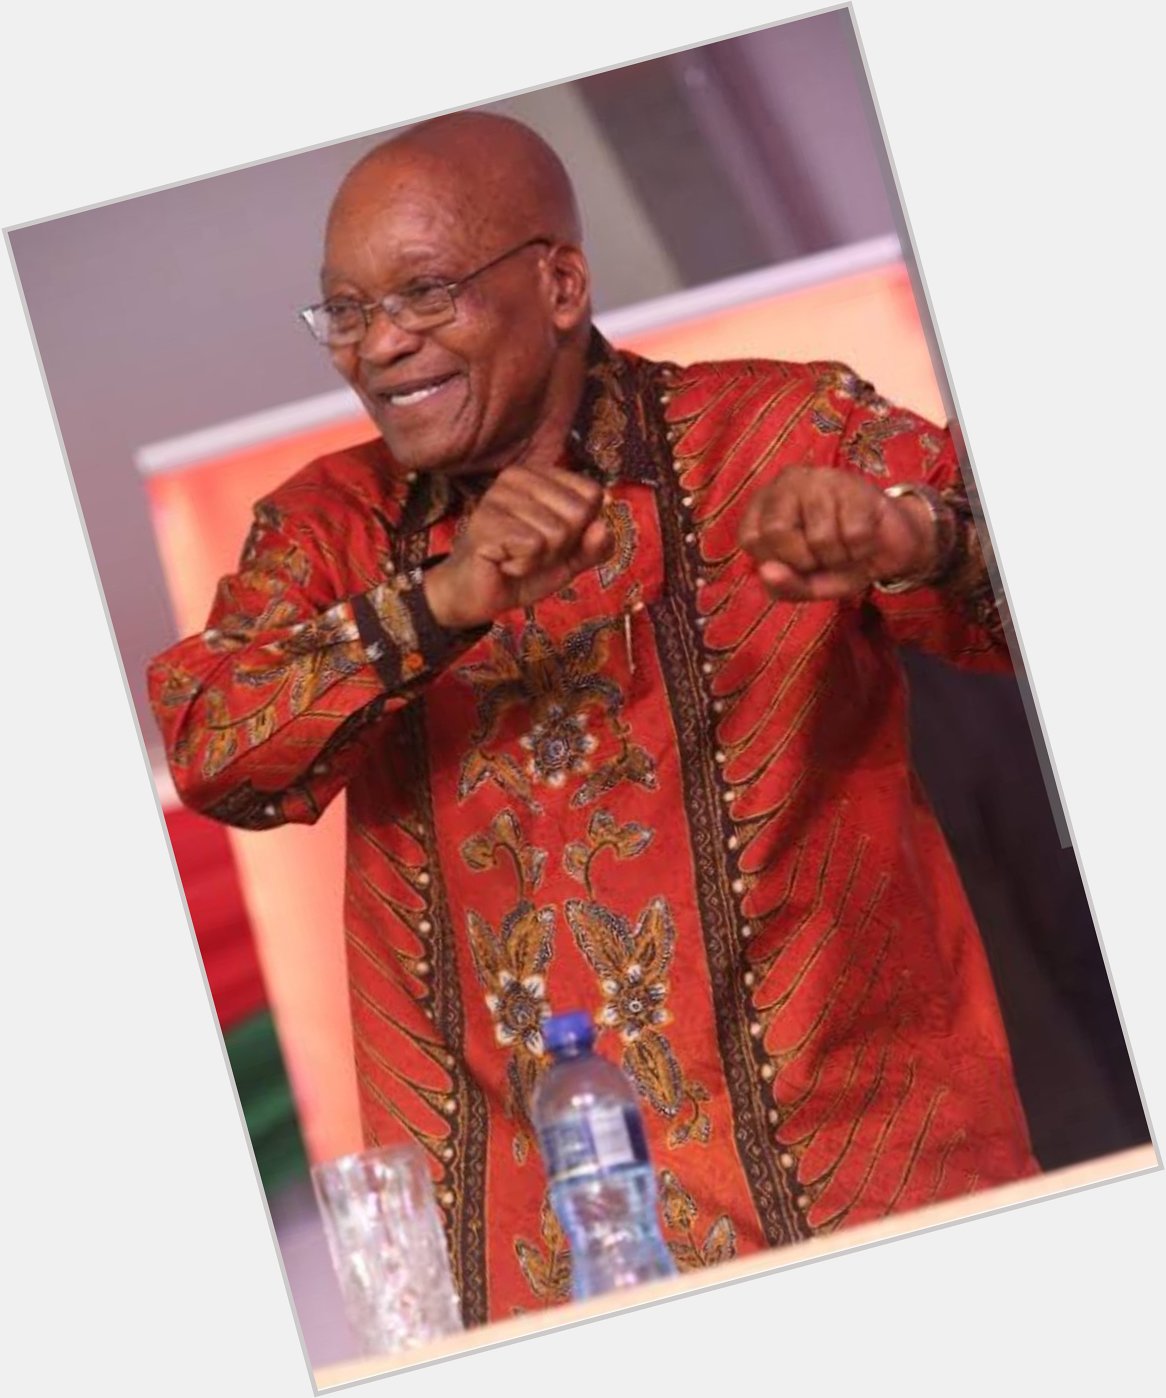 Unwel\olude Bab\uNxamalala! Amathongo oMsholozi asigadele wena njalo.

Happy Birthday Baba Jacob Zuma 